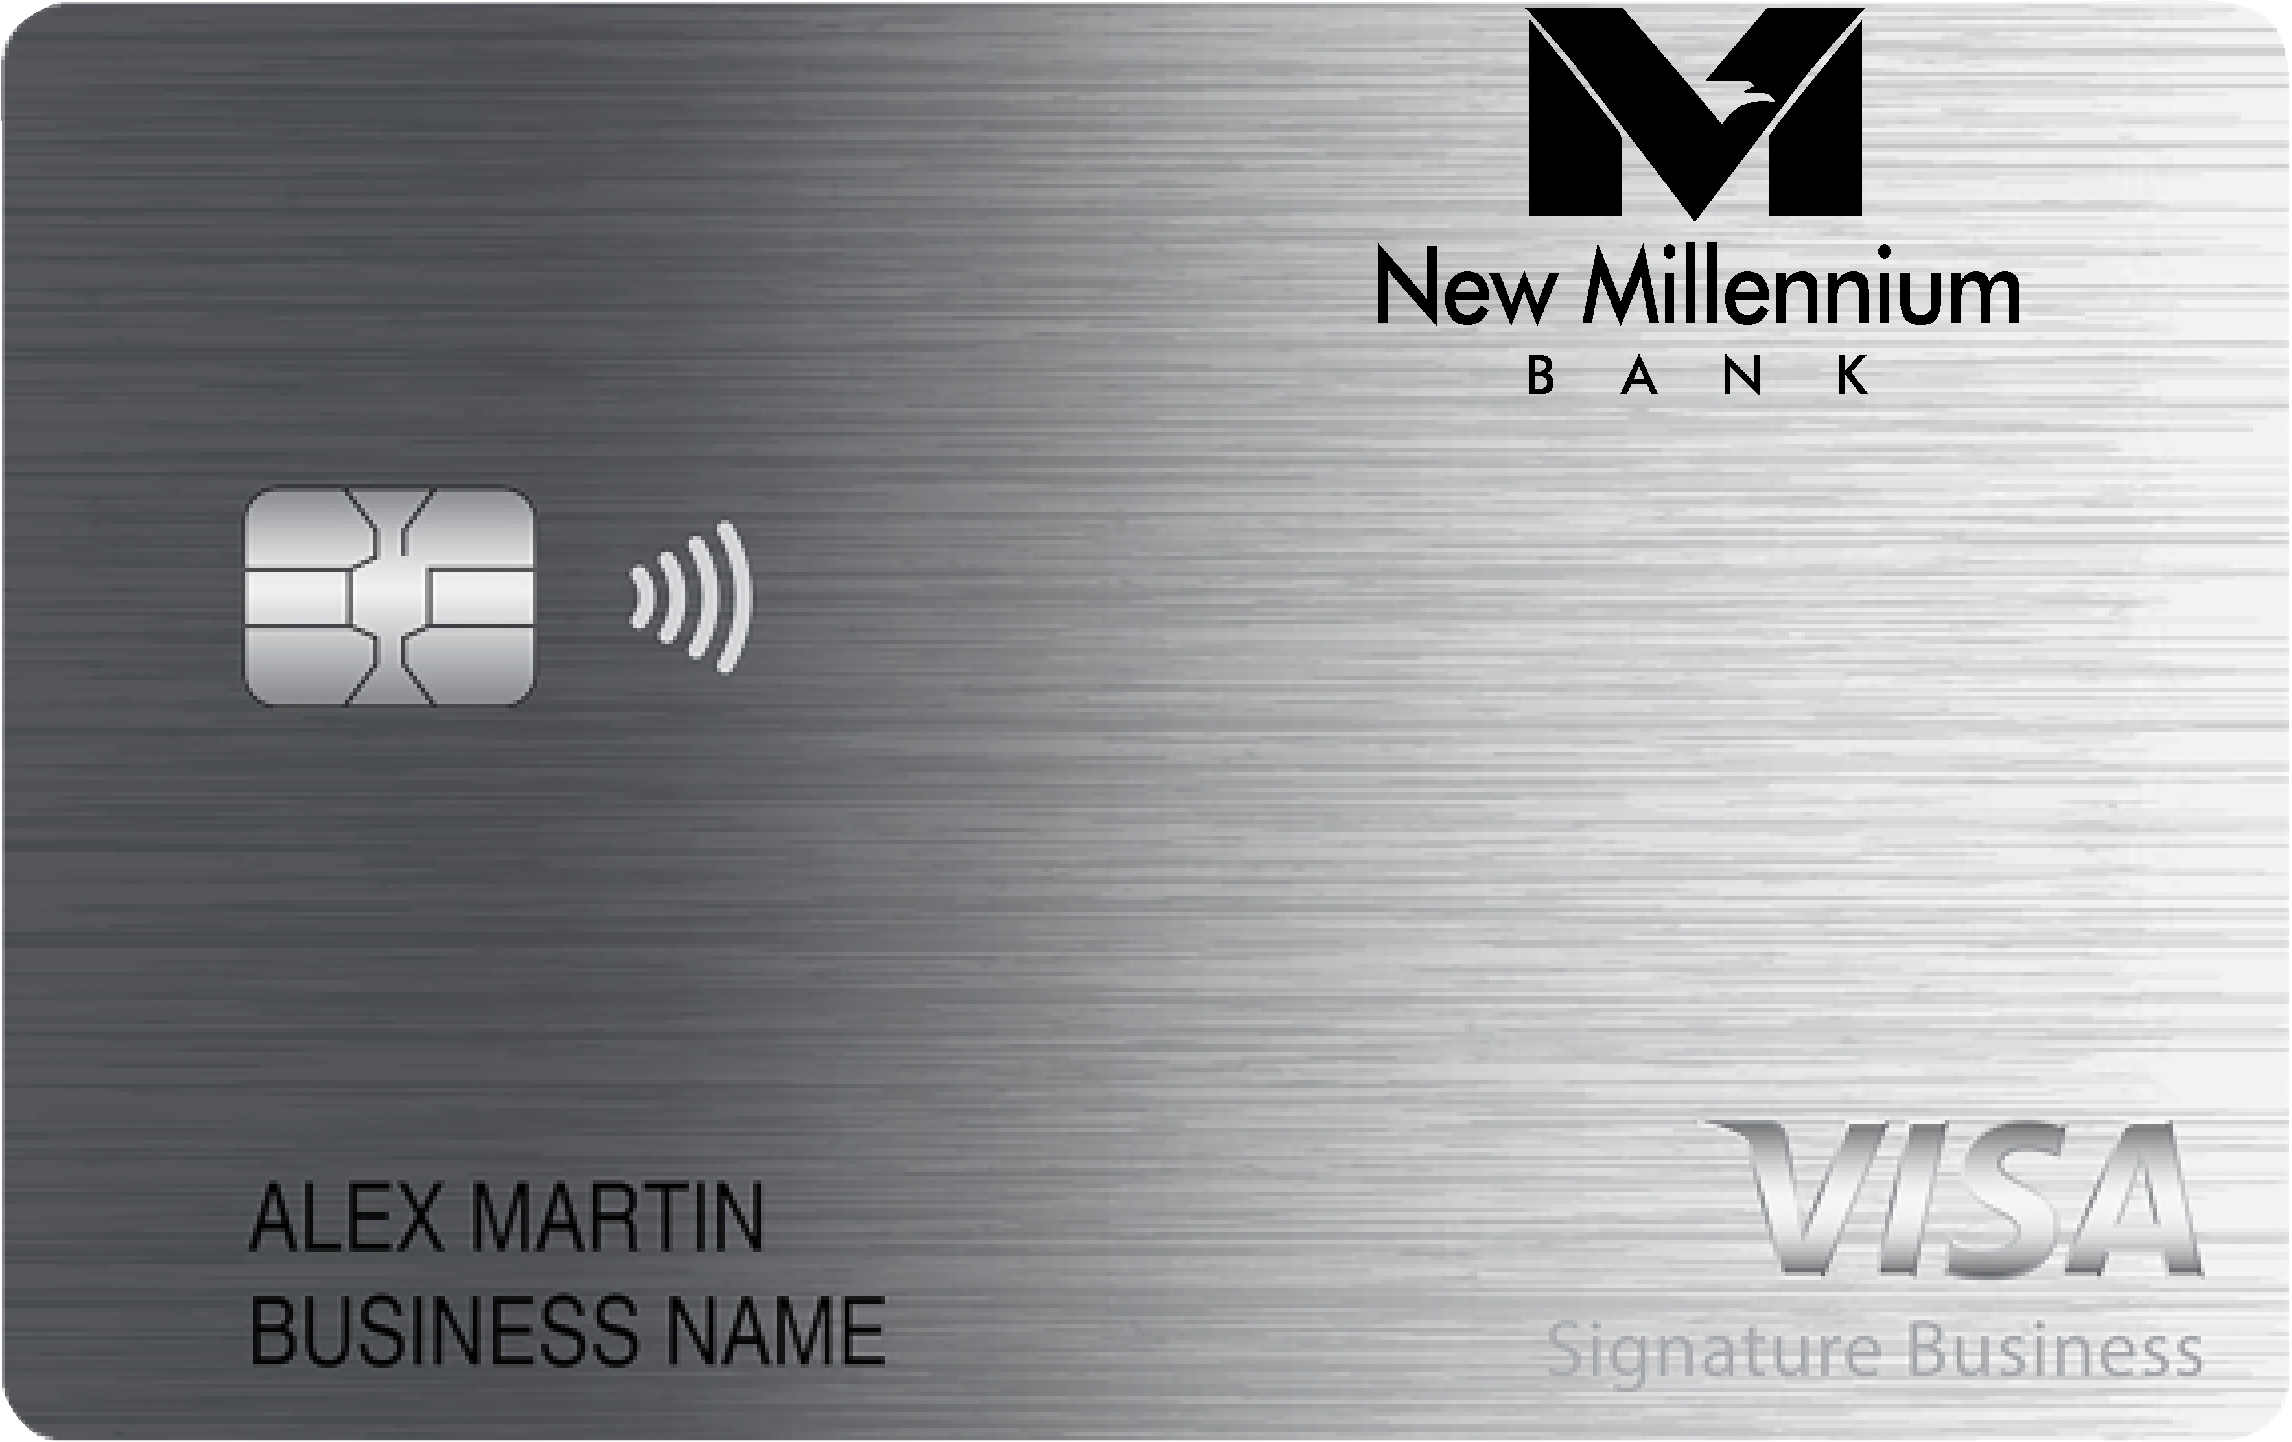 New Millennium Bank Smart Business Rewards Card